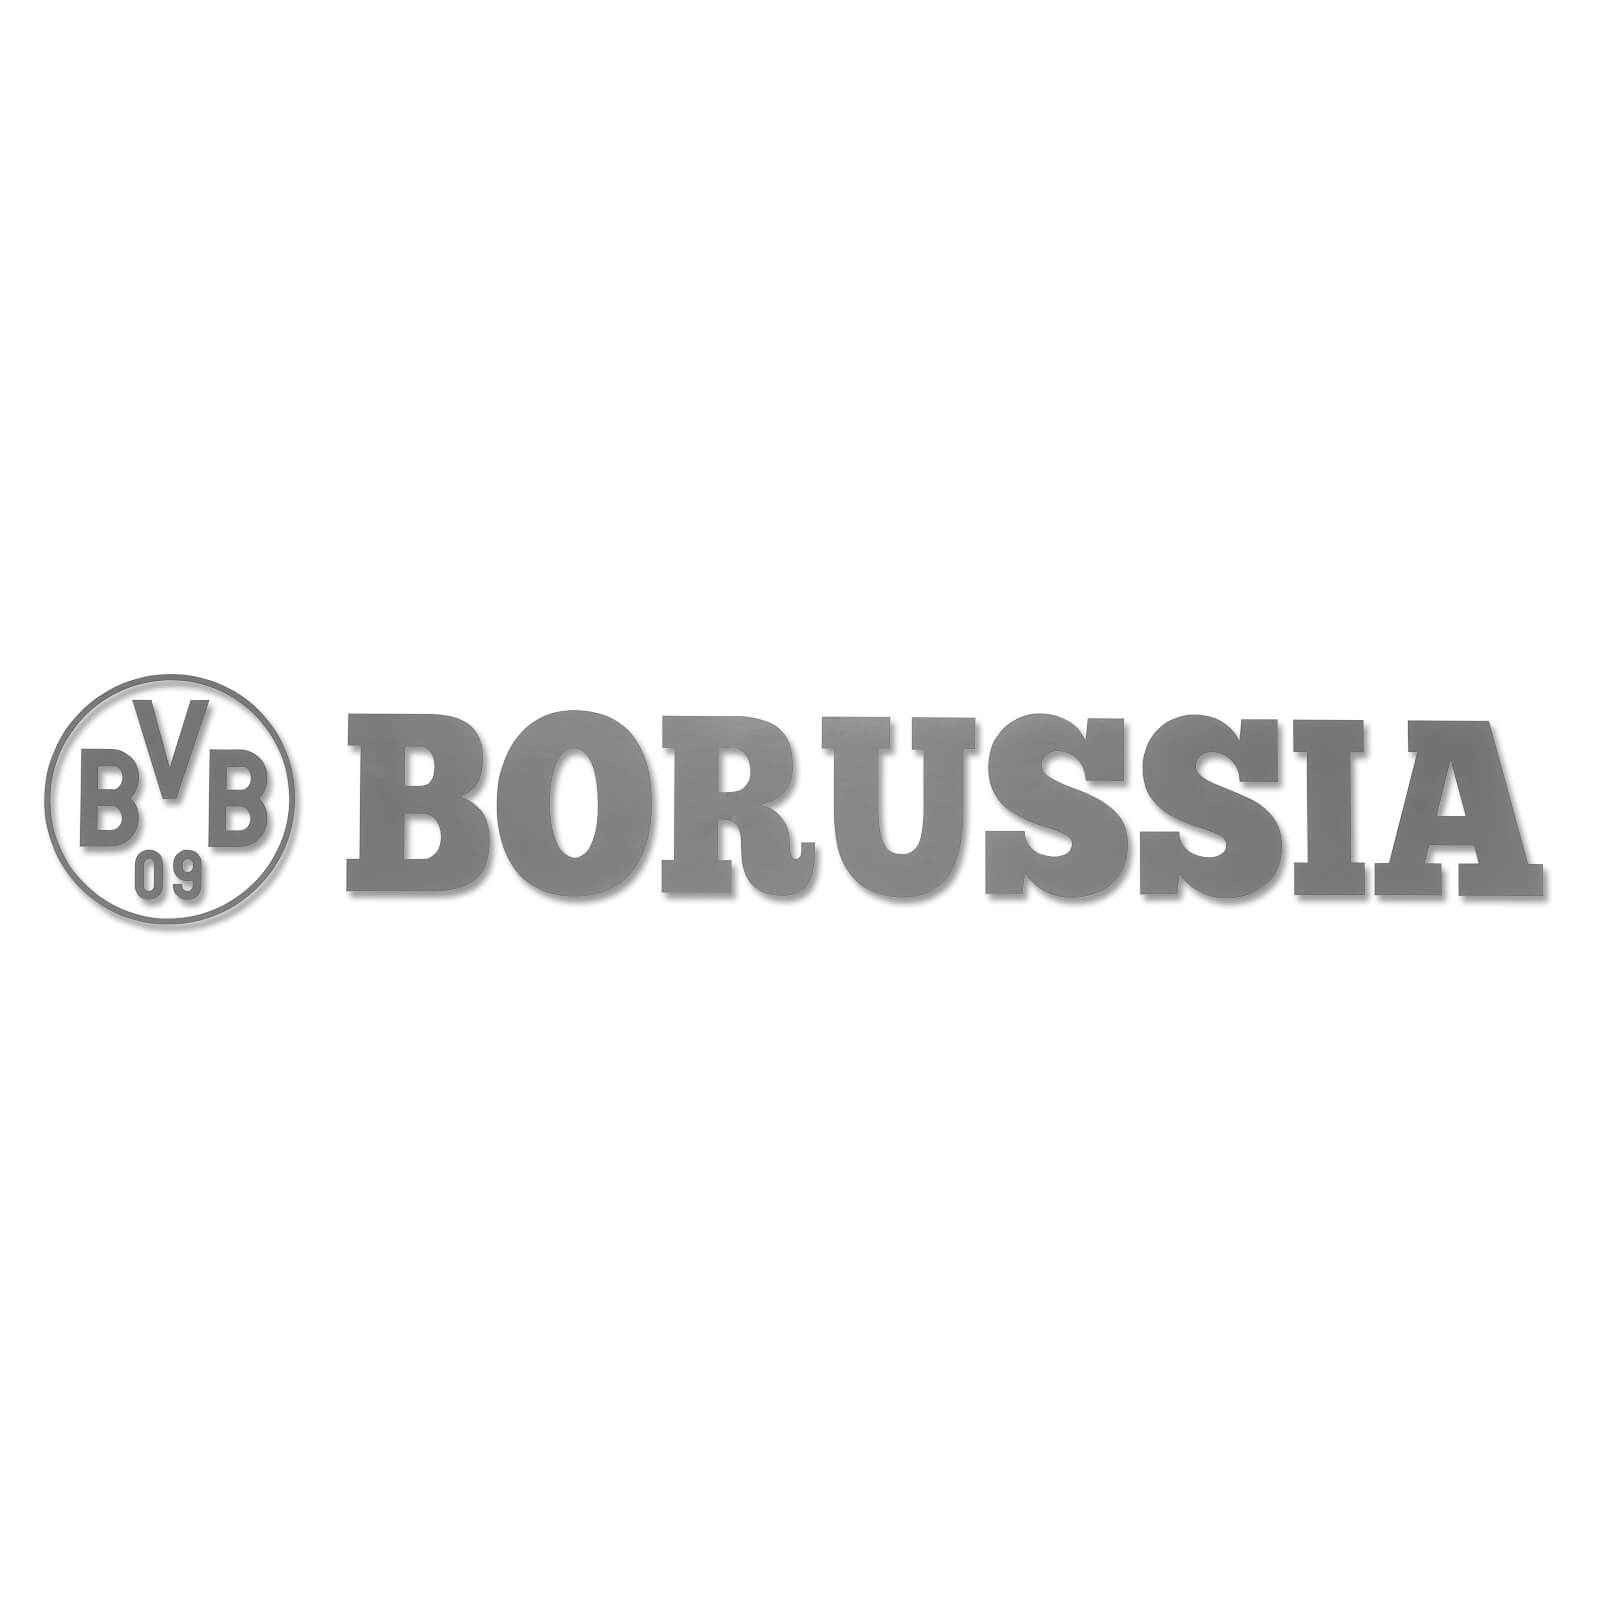 Sticker BVB 09 Aufkleber Borussia Dortmund Autoaufkleber Borussin auf Achse 